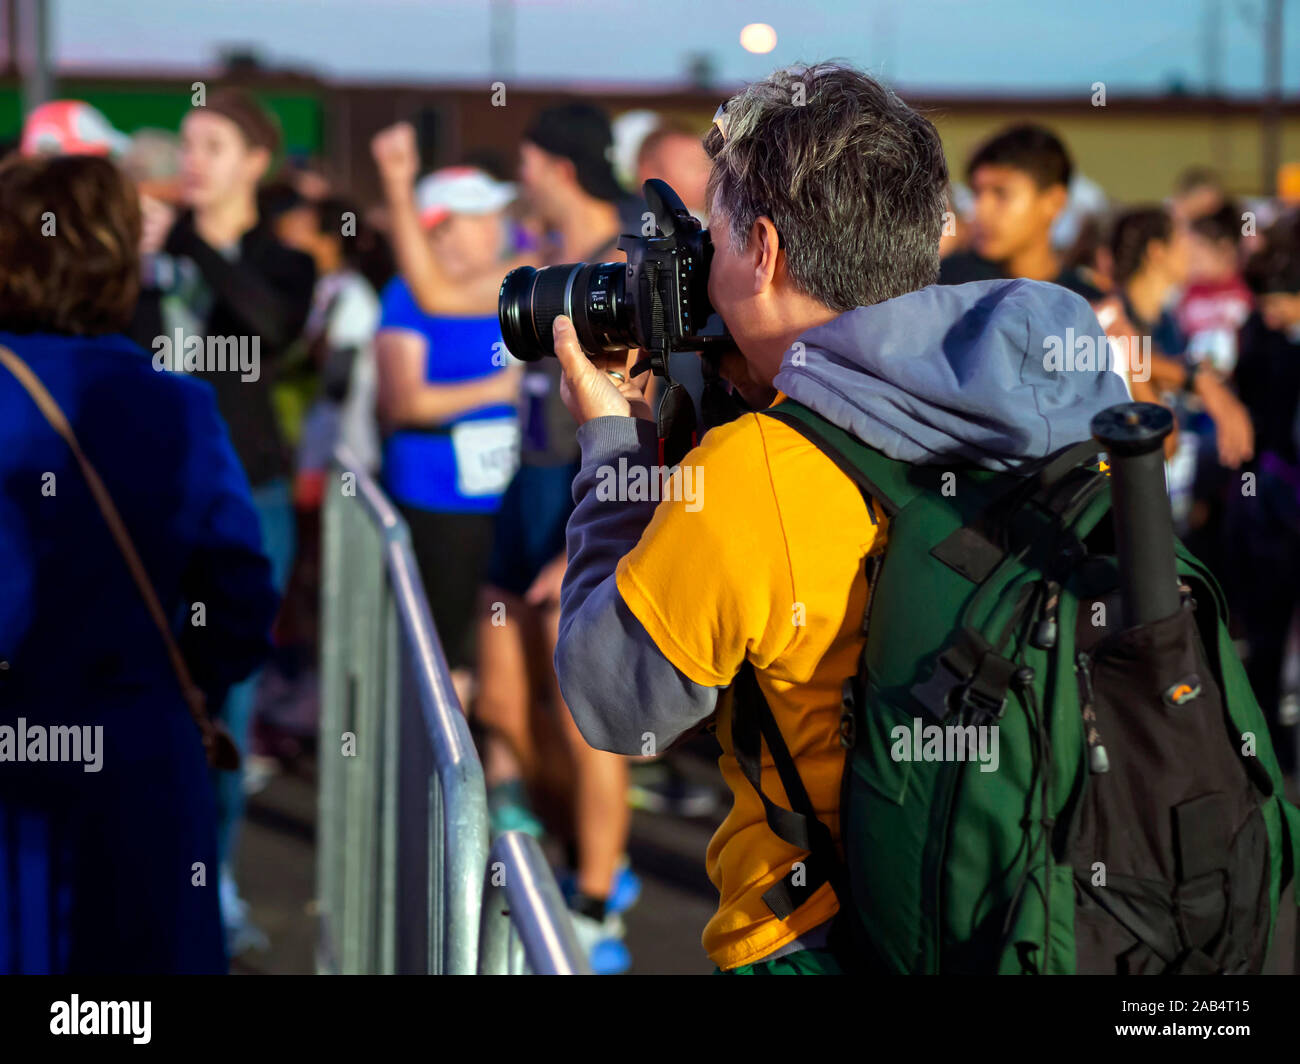 Fotografin konzentriert sich Ihre Kamera auf der Masse der Konkurrenten warten auf den Beginn des Corpus Christi 15. jährlichen Hafen Halbmarathon. Stockfoto